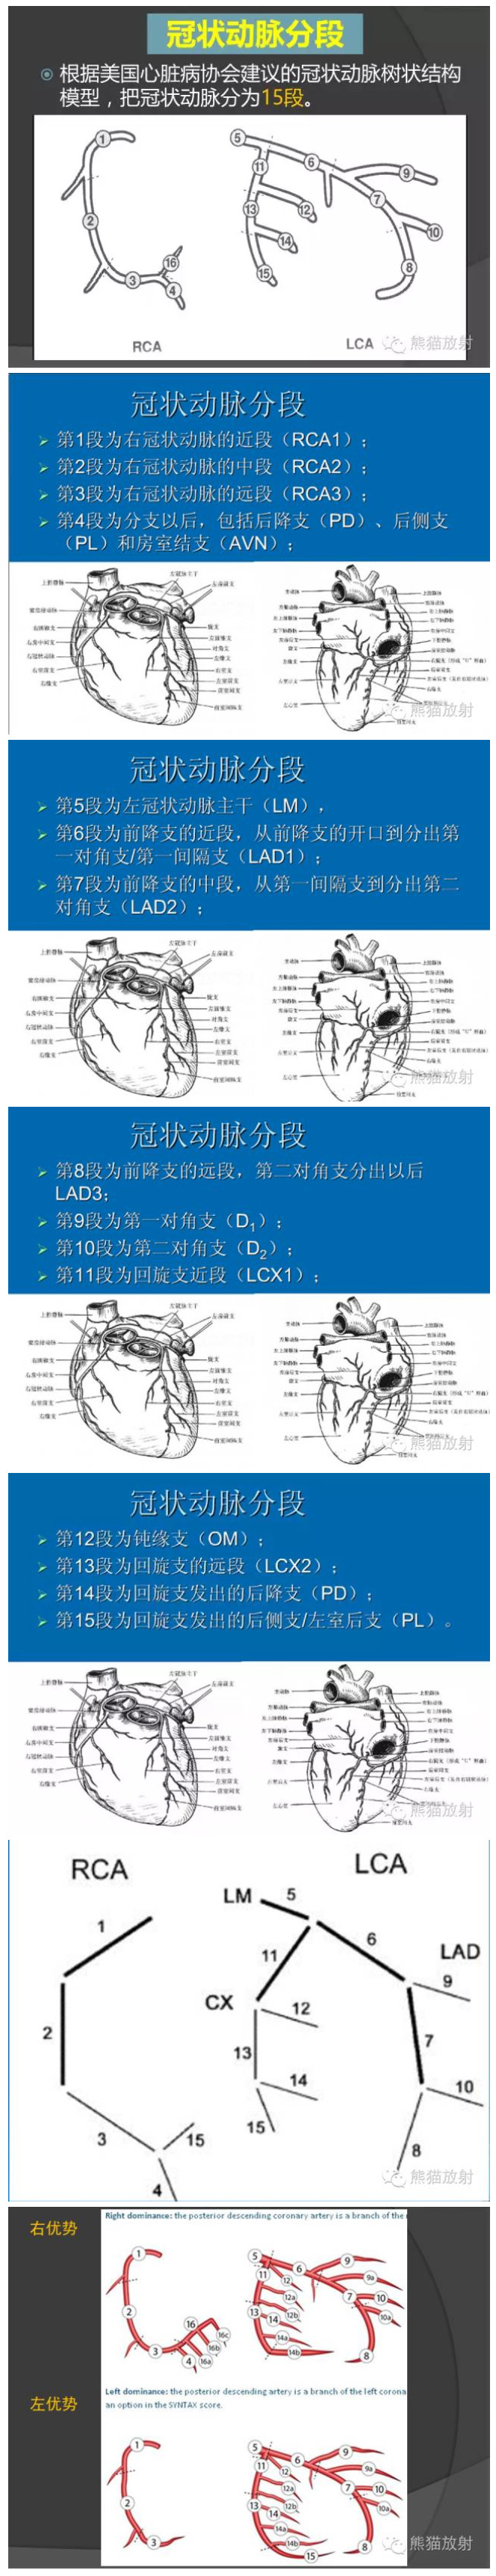 六,冠状动脉分段方法五,冠状动脉cta解剖四,心血管名称缩写三,冠状